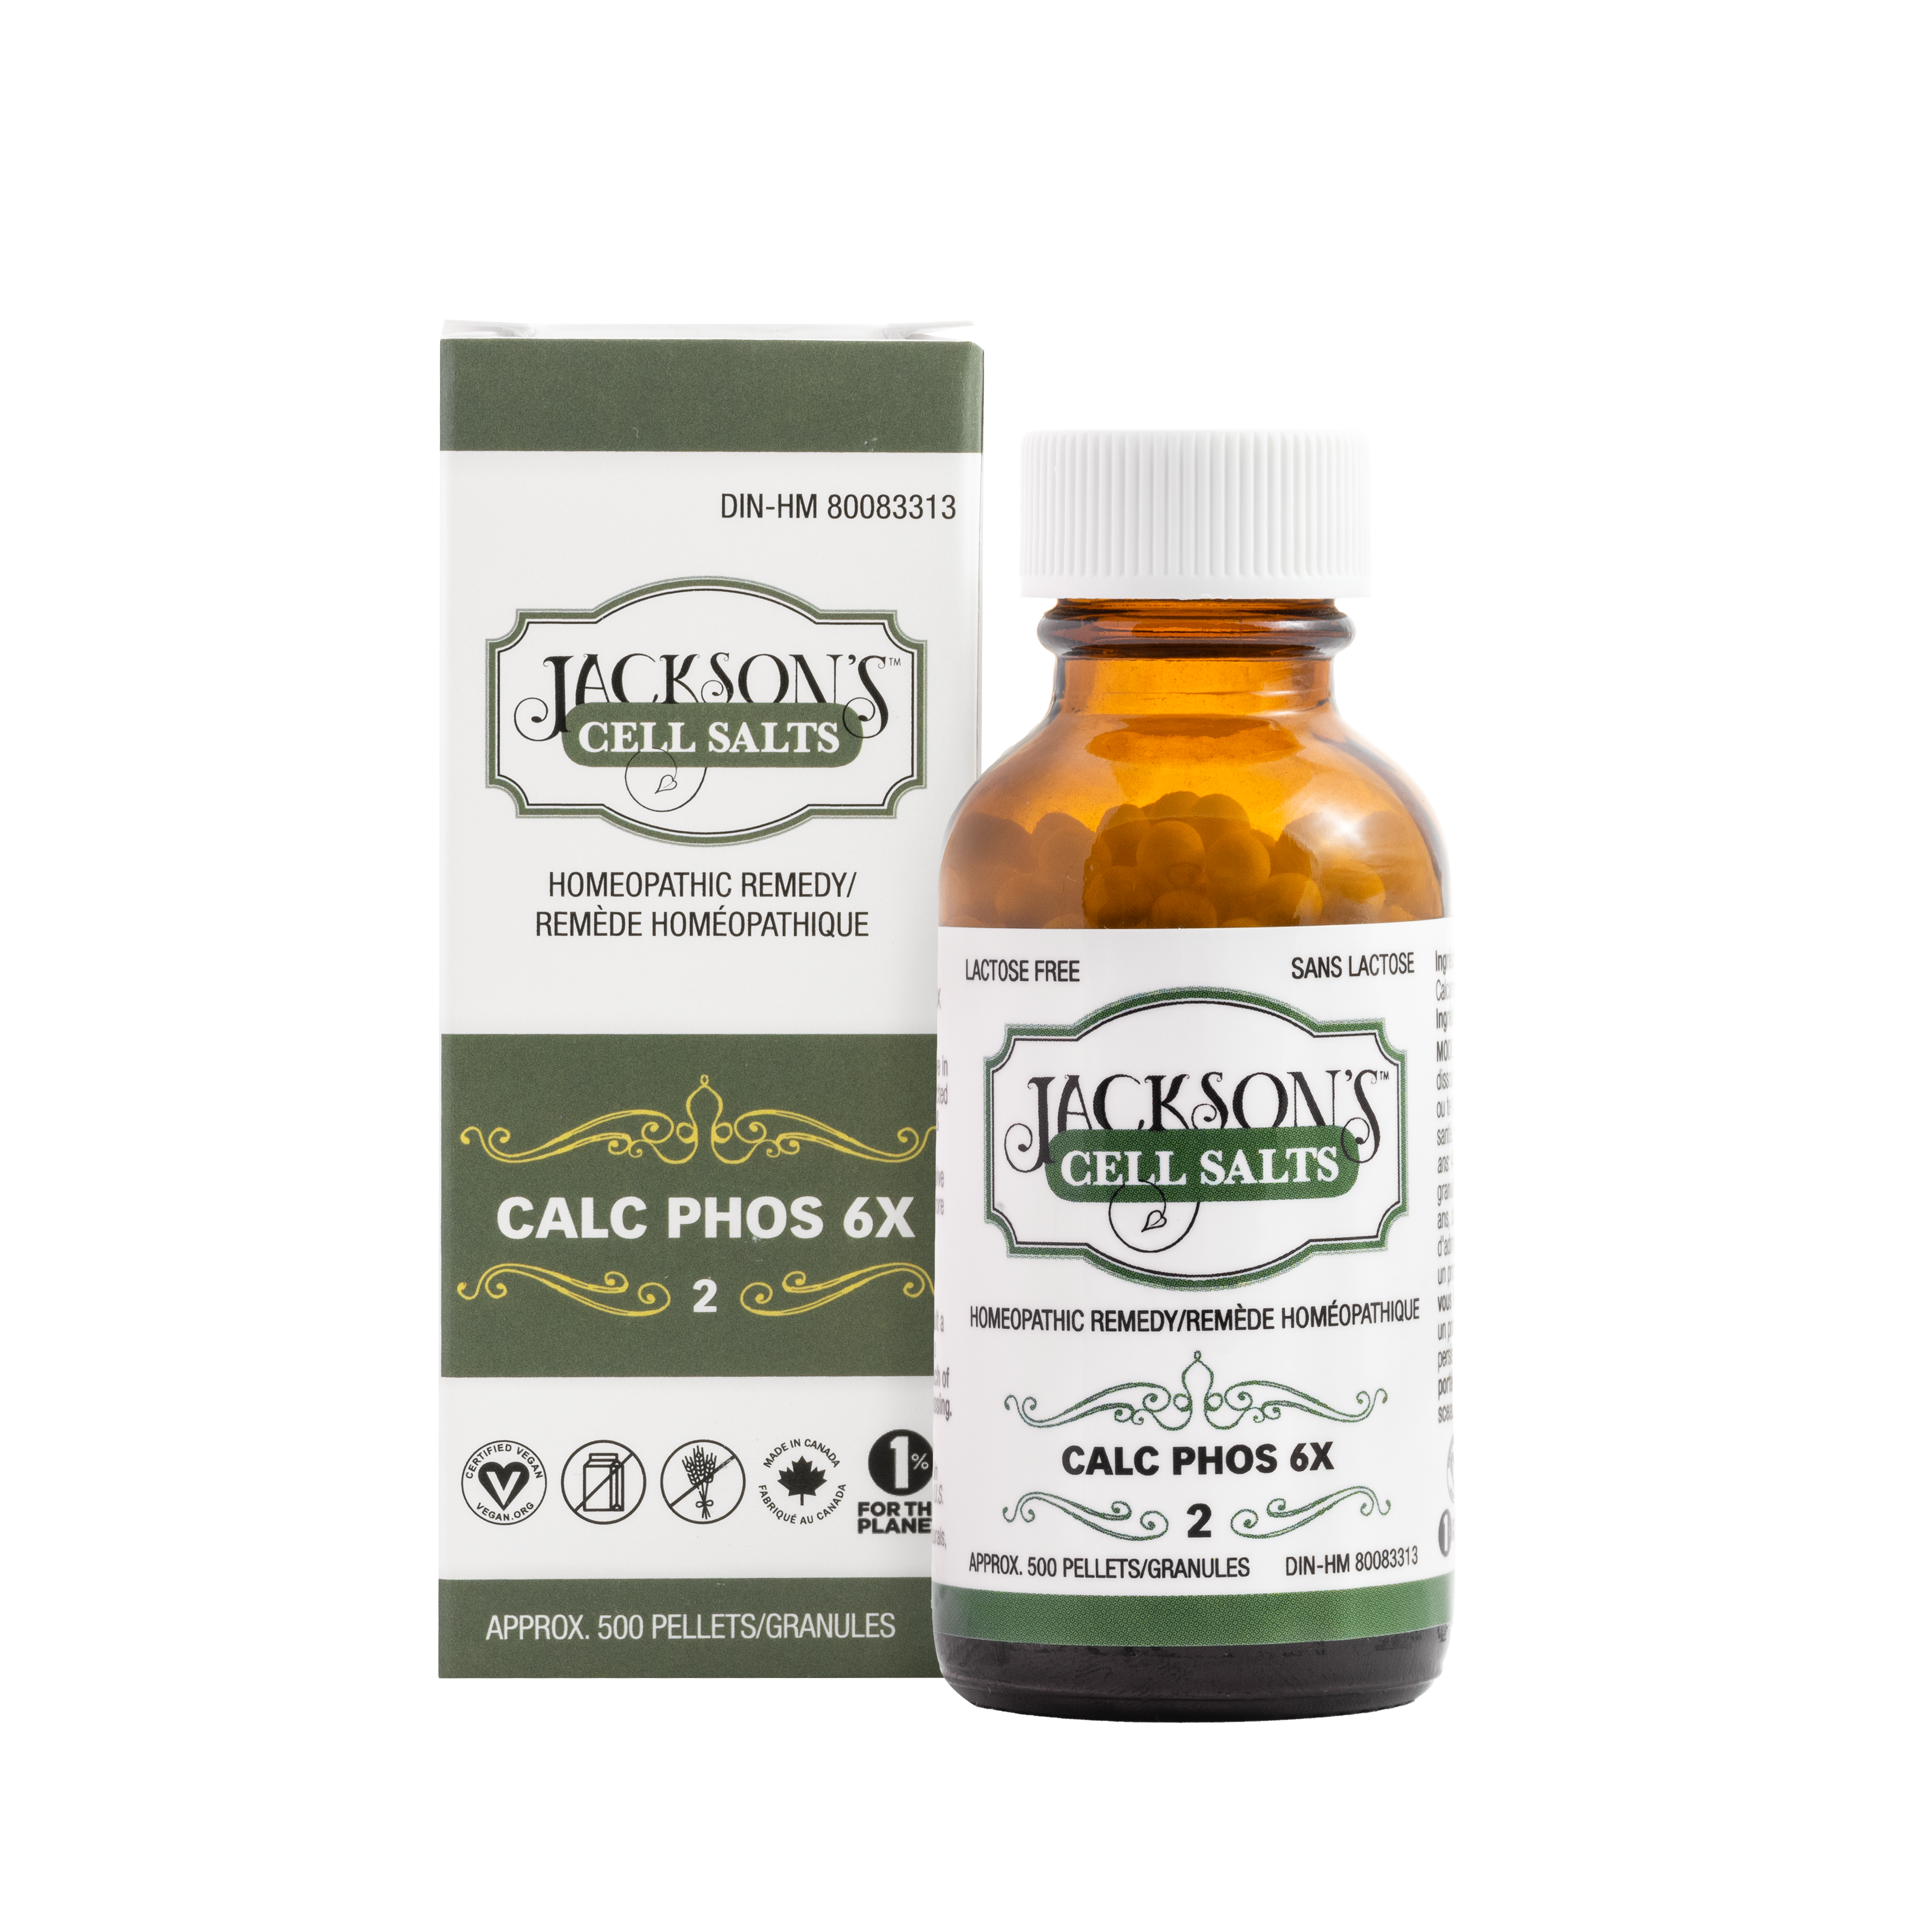 #2 Calc phos 6X (phosphate de calcium) - Sel de cellules de Schuessler (tissus) certifié végétalien et sans lactose